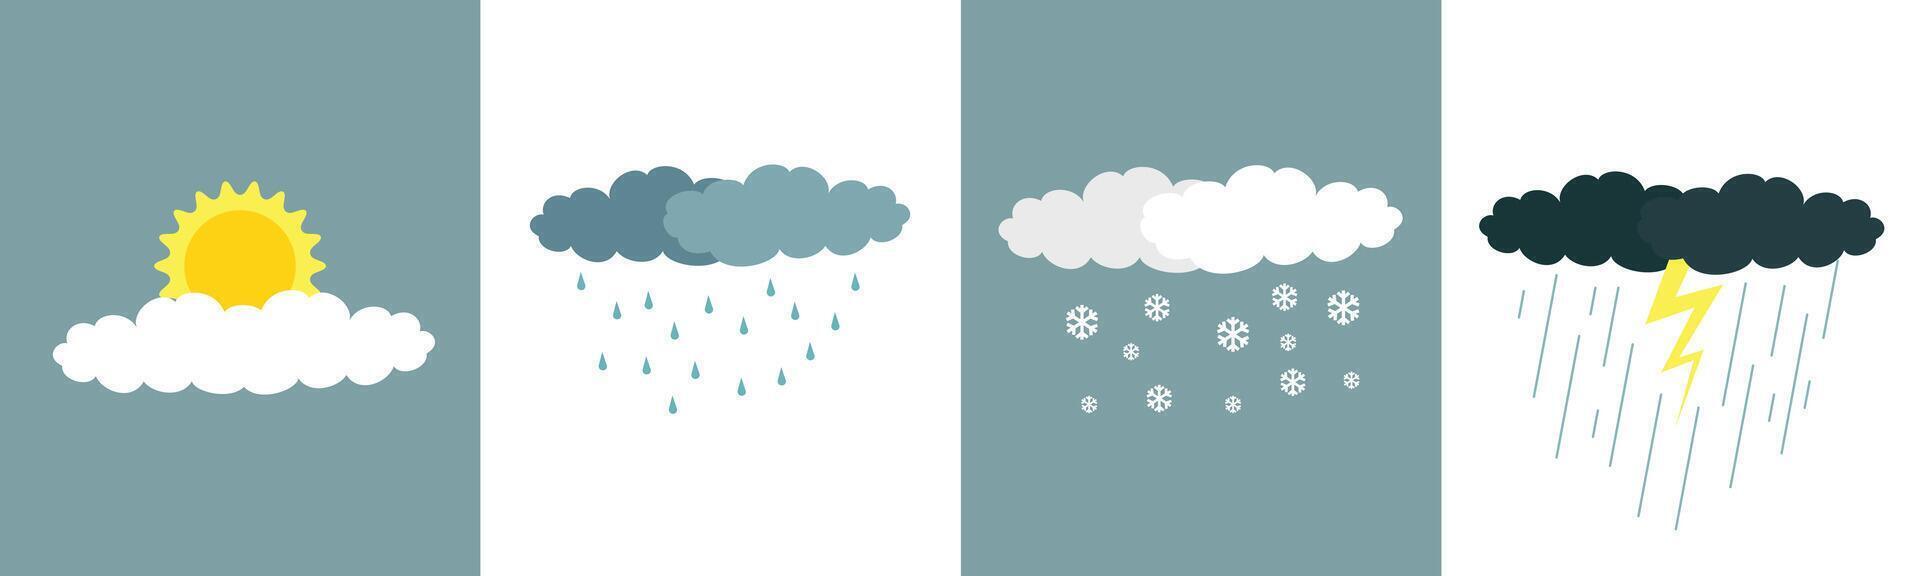 väder symbol uppsättning. vinter, regnig, solig, molnig, åskväder vektor illustration